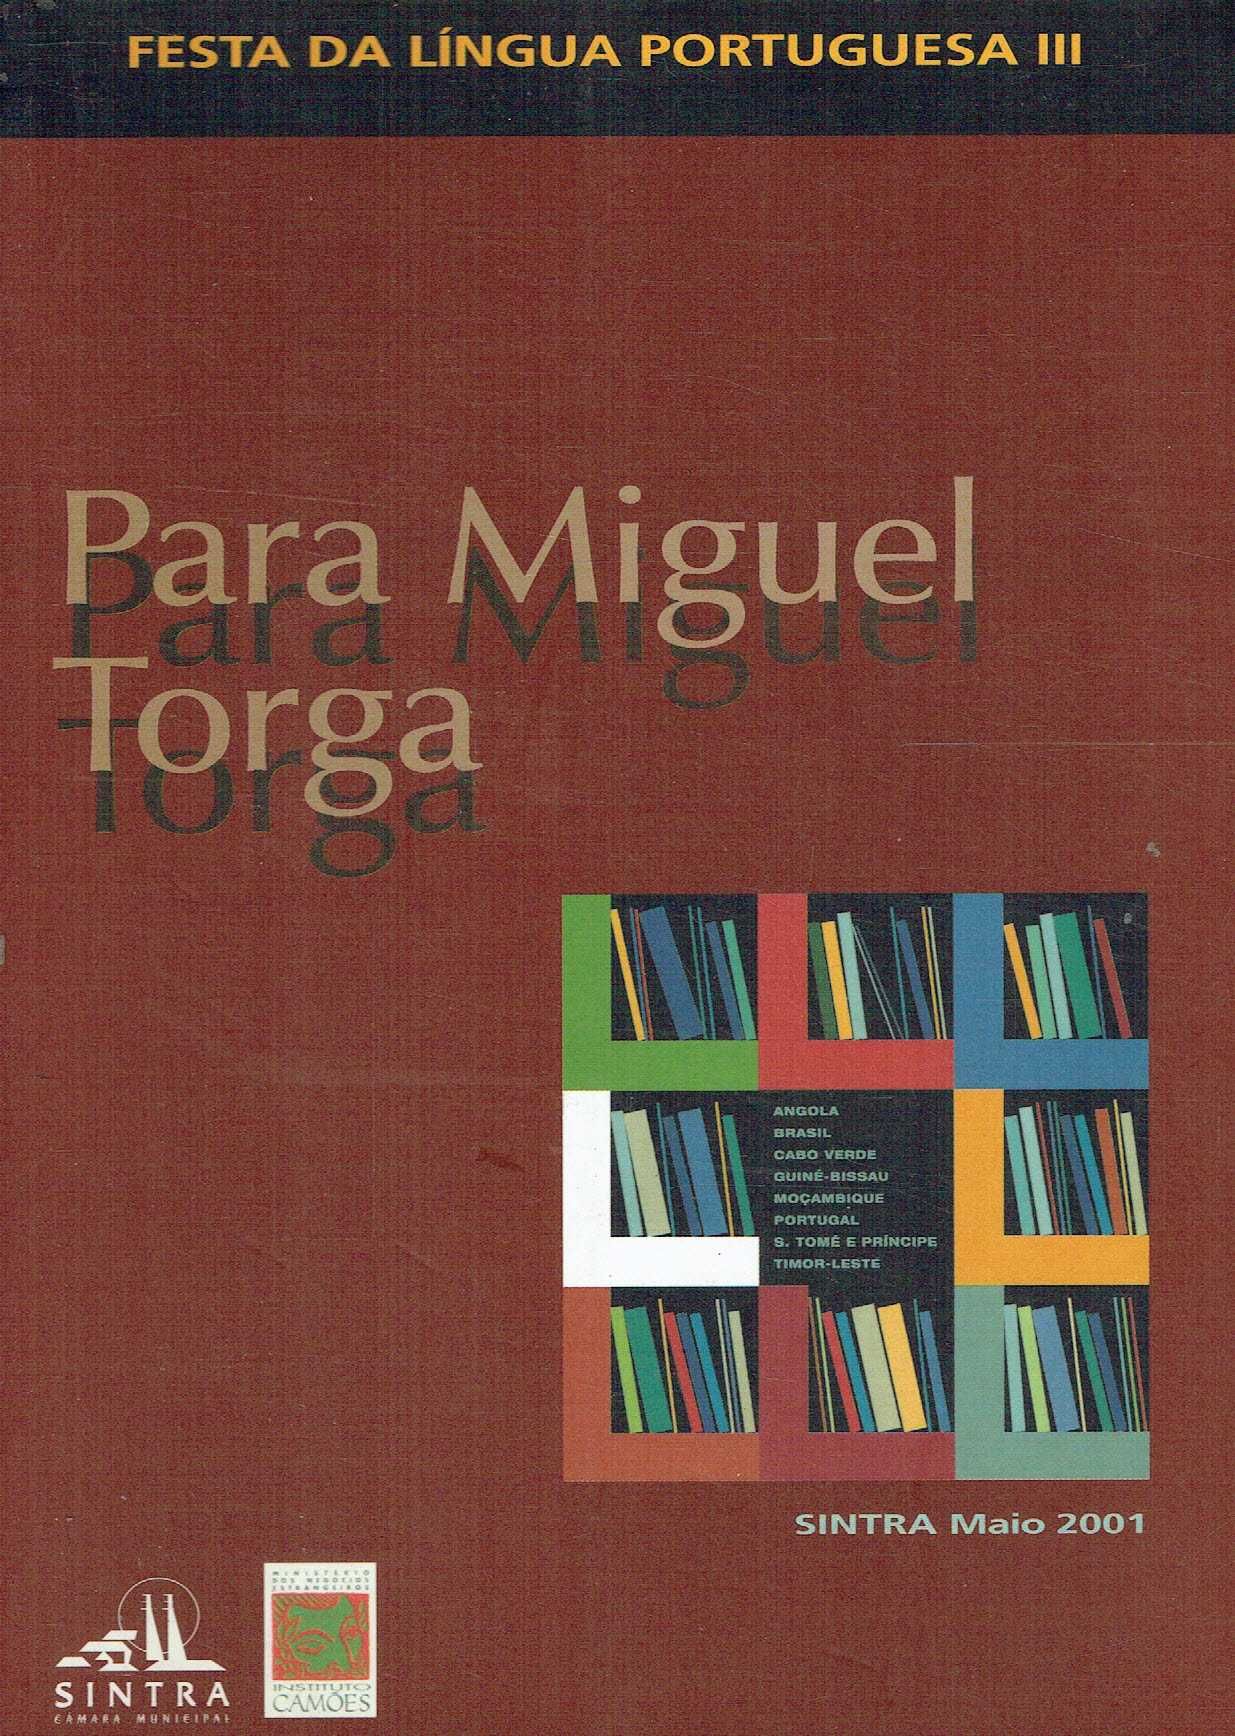 4909

Para Miguel Torga